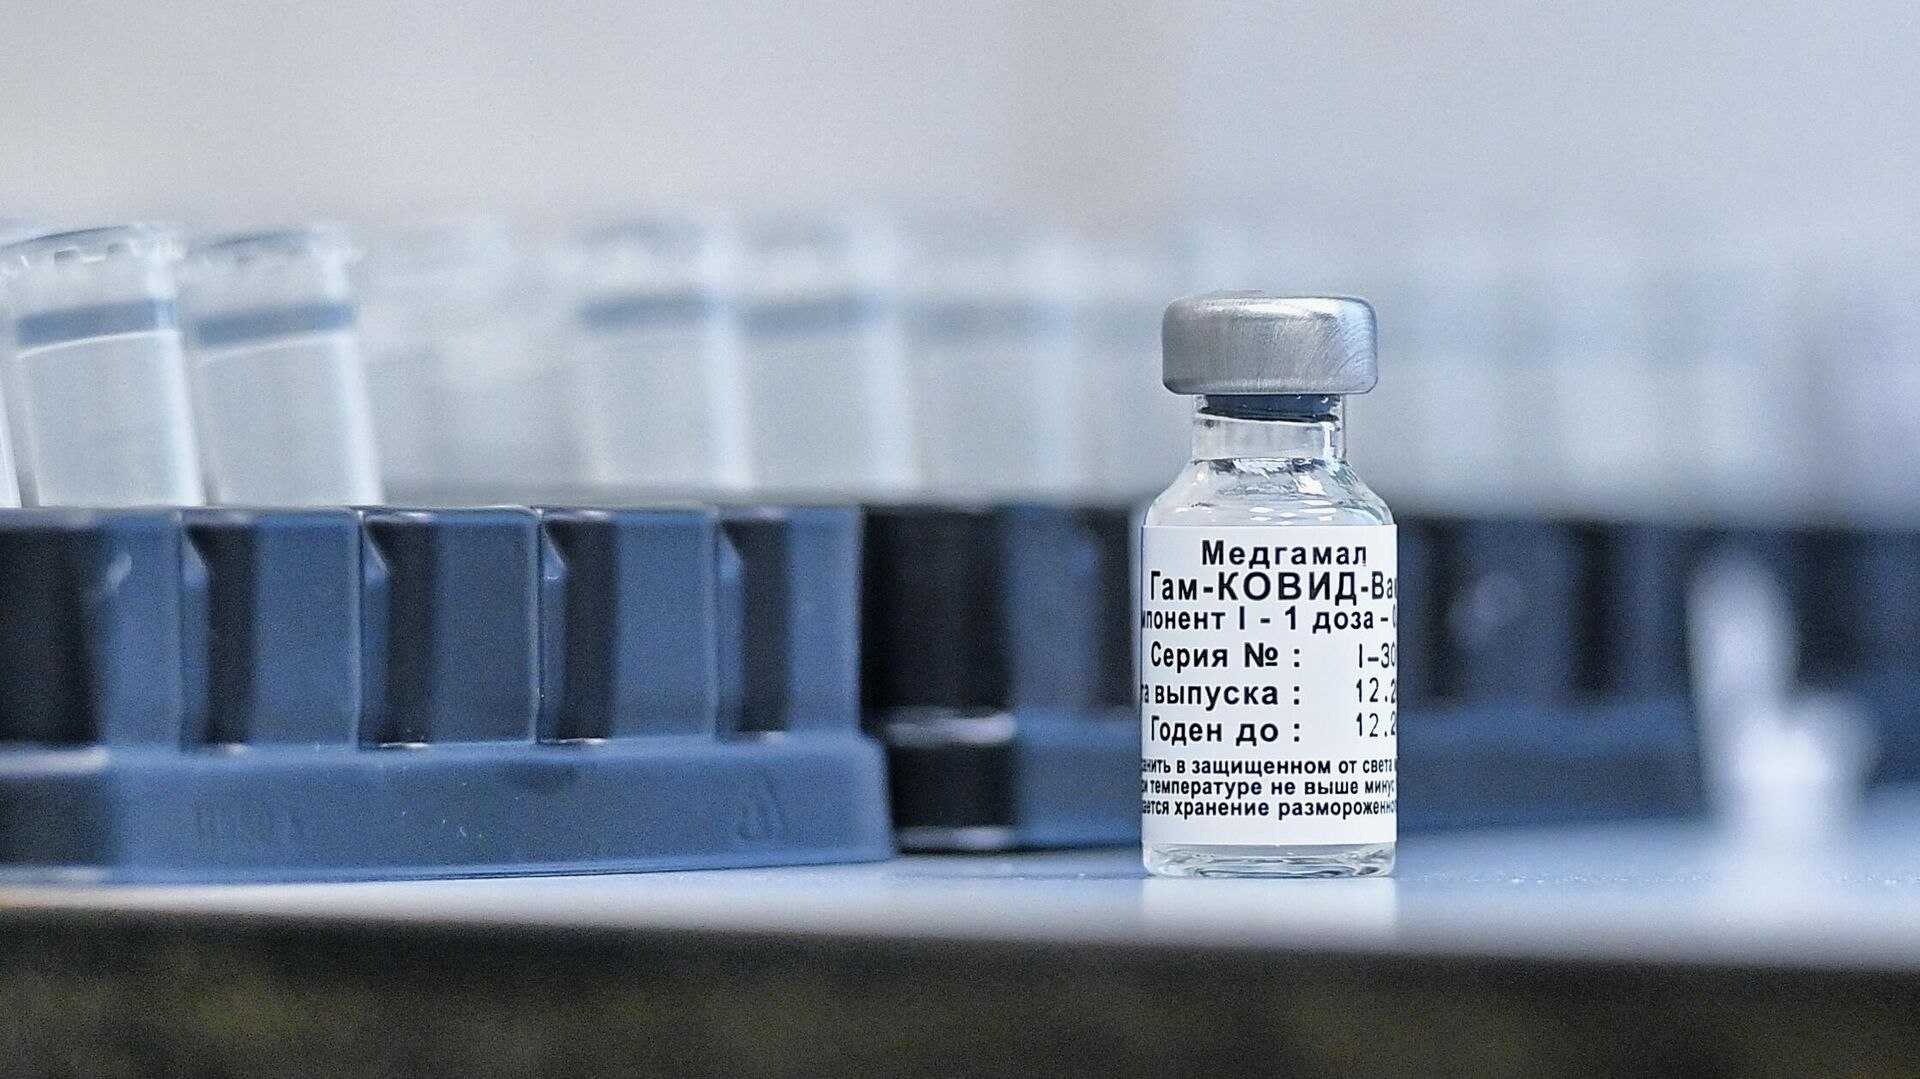 Обновлённая вакцина от коронавируса Спутник V - 2.0 поступит в Хабаровск зимой